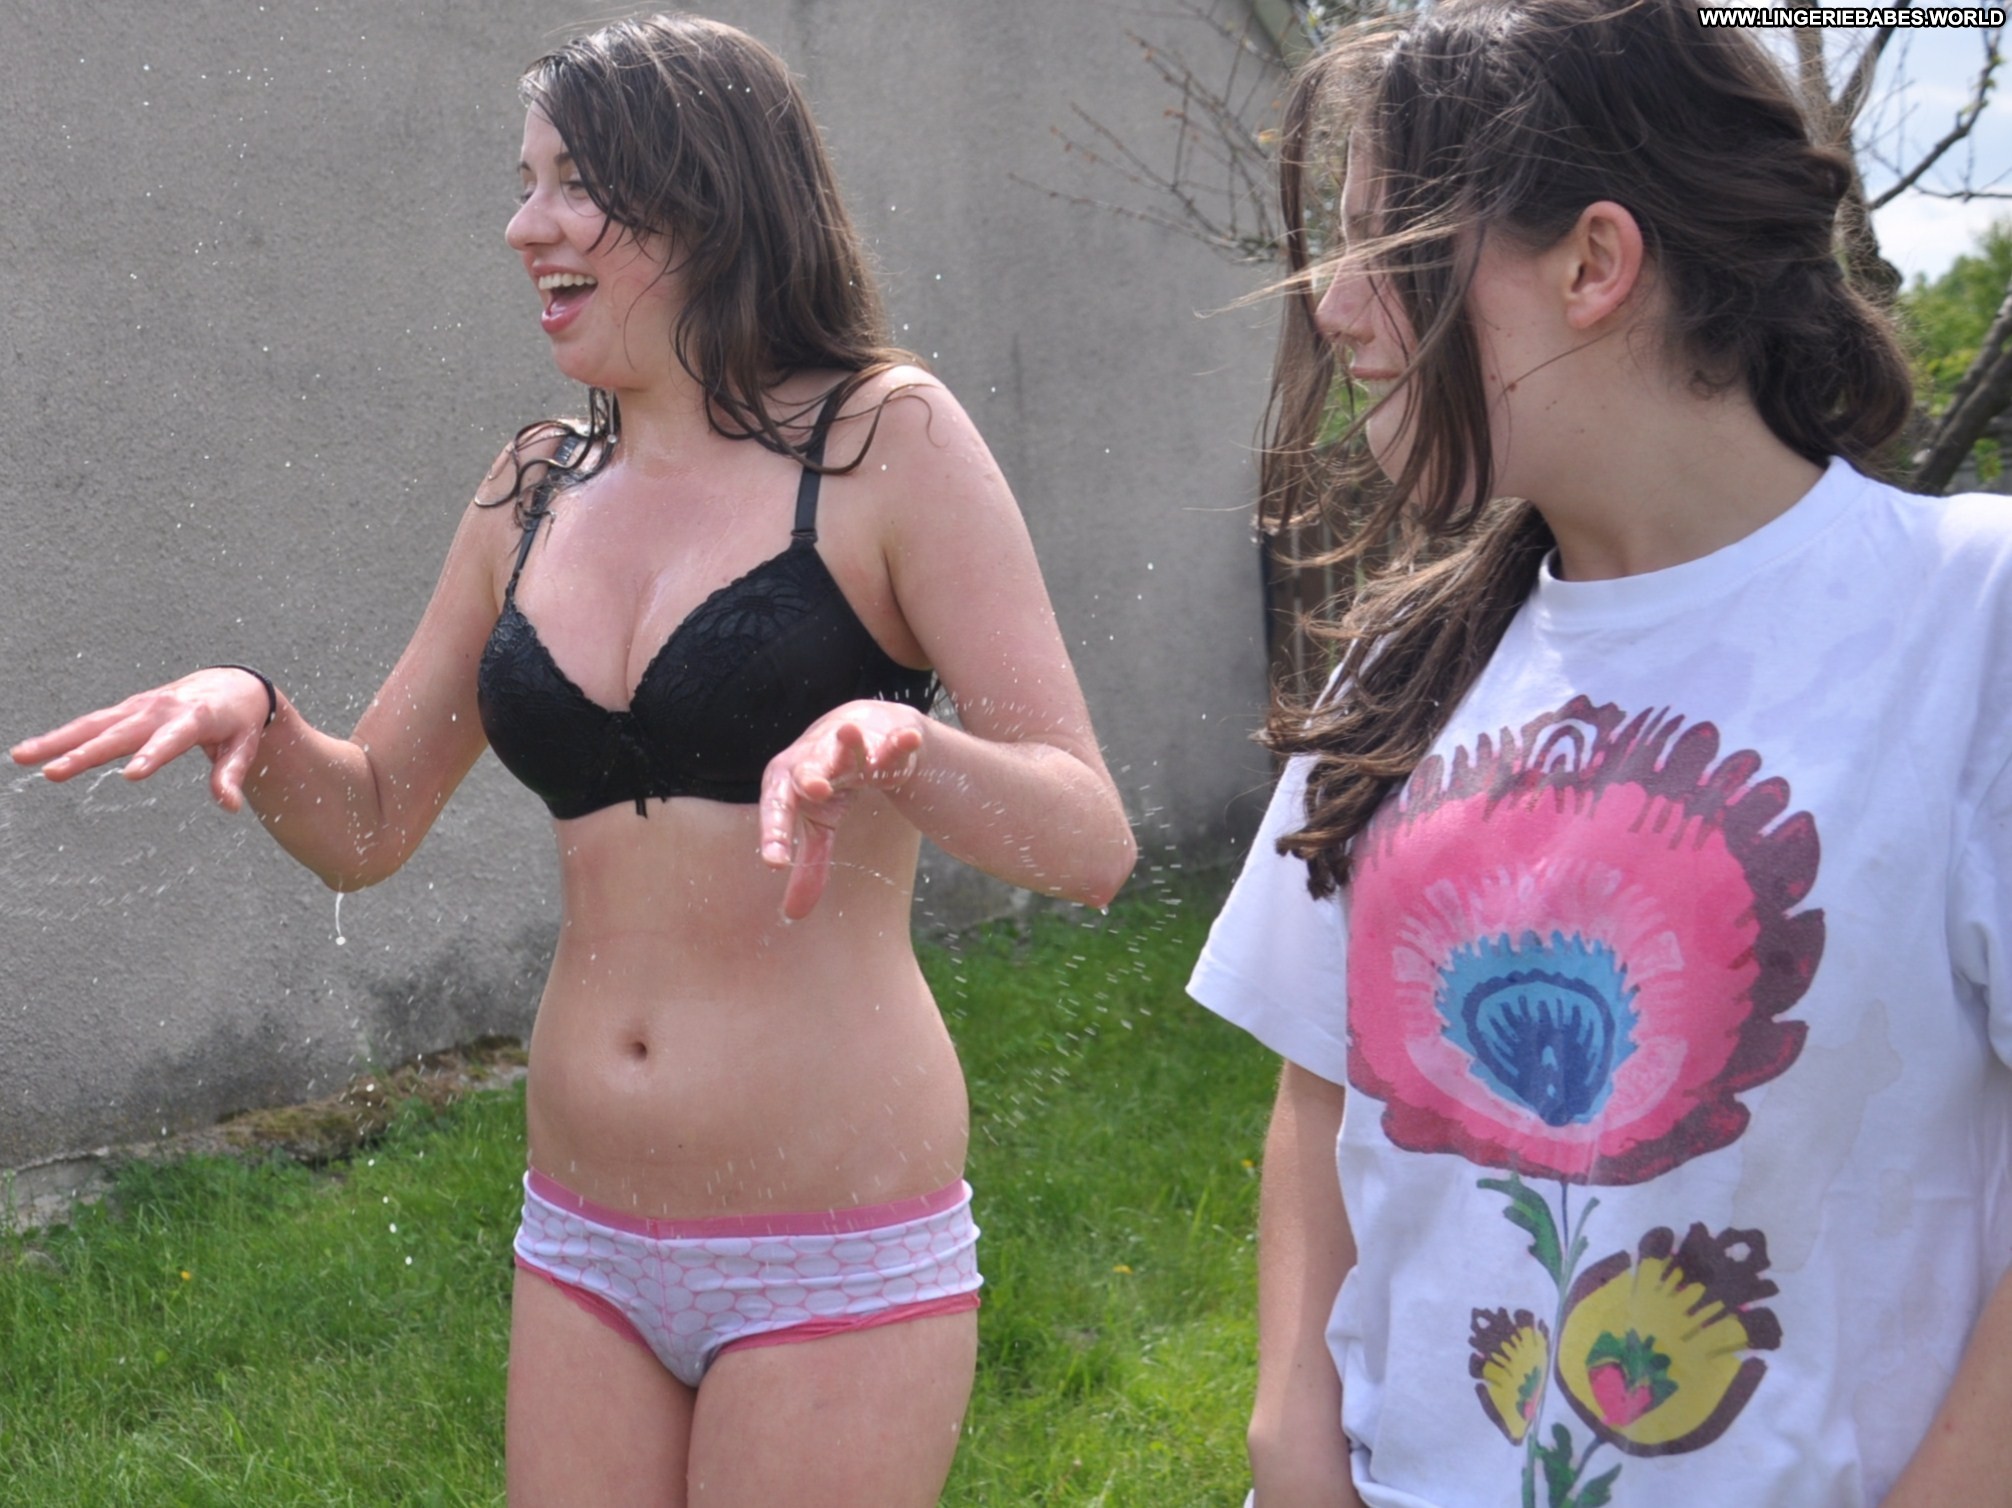 Antoinette Friends Straight Bra Teen Girls Sex Amateur Girls Leaked Best Of Czech Republic Panties Best Leaks image